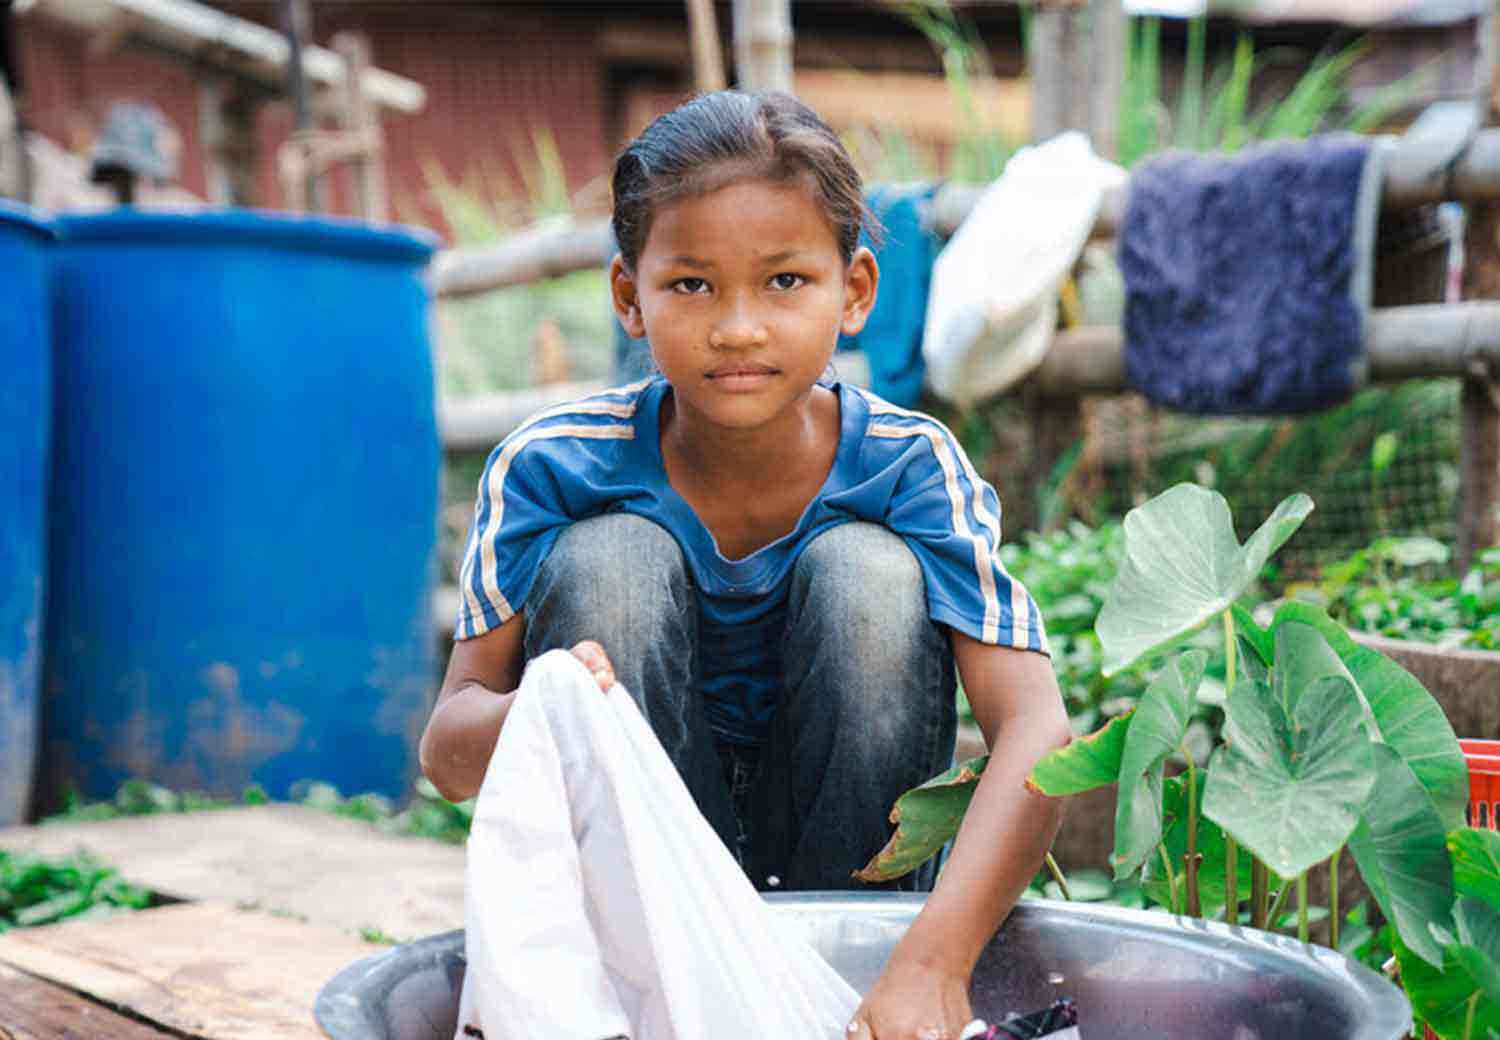 Barnearbeid er svært utbredt i land som Kambodsja